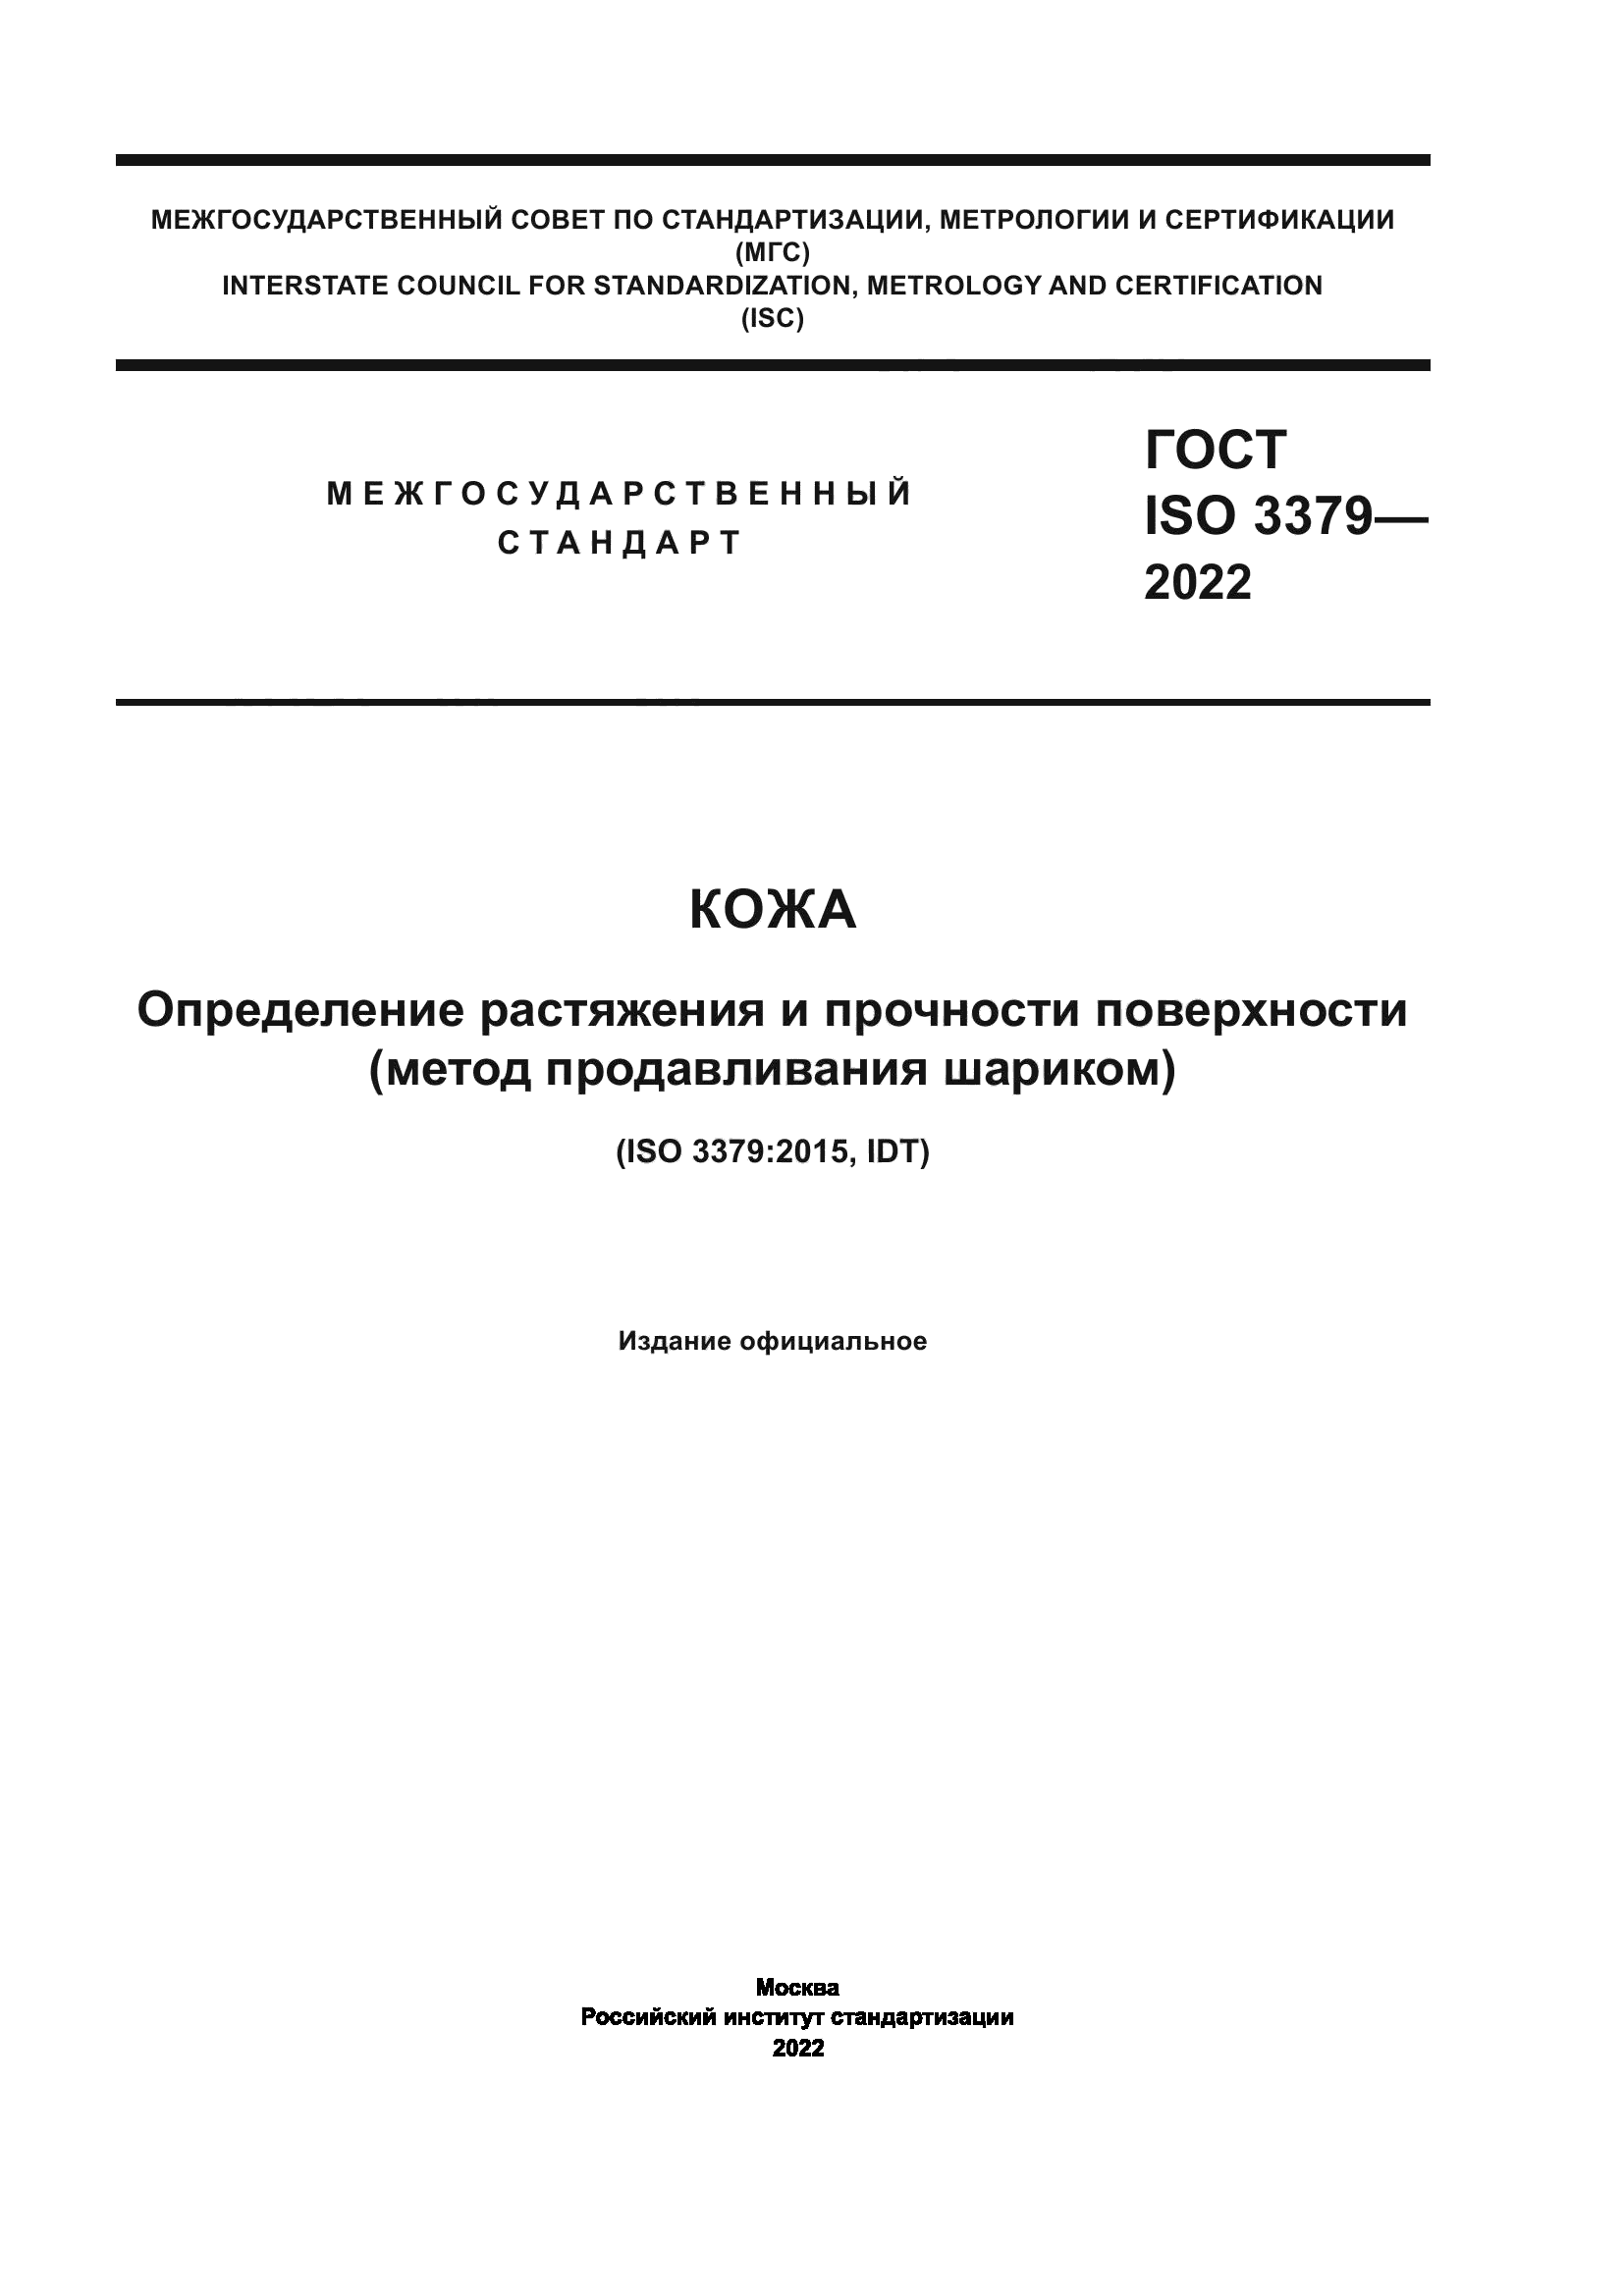 ГОСТ ISO 3379-2022